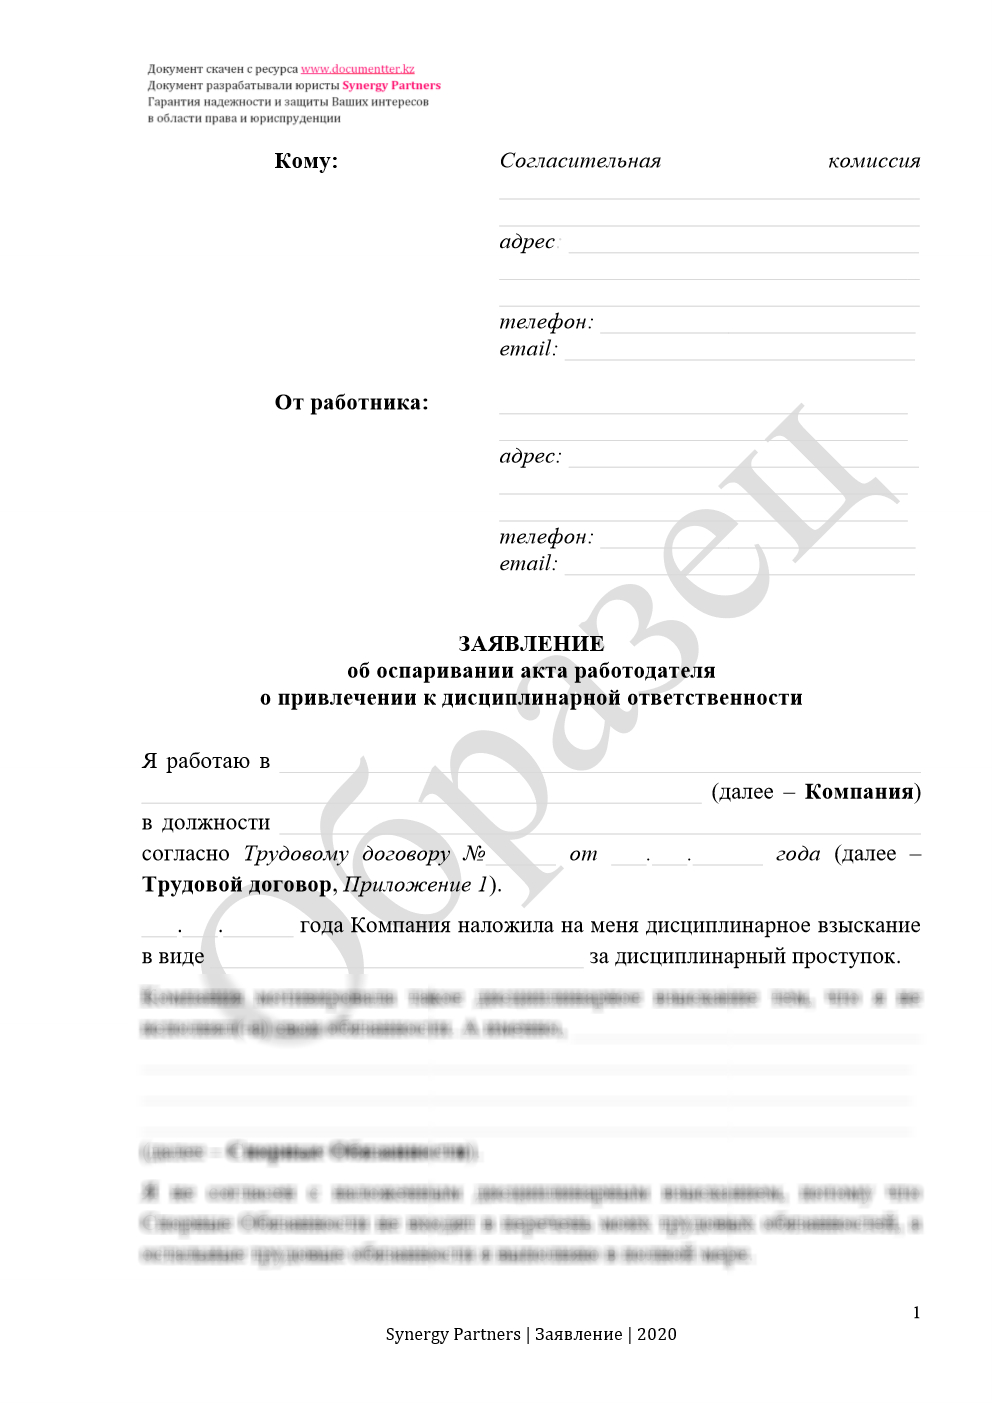 Заявление в согласительную комиссию, если незаконно наложили дисциплинарное взыскание 6 | documentter.kz в Казахстане 